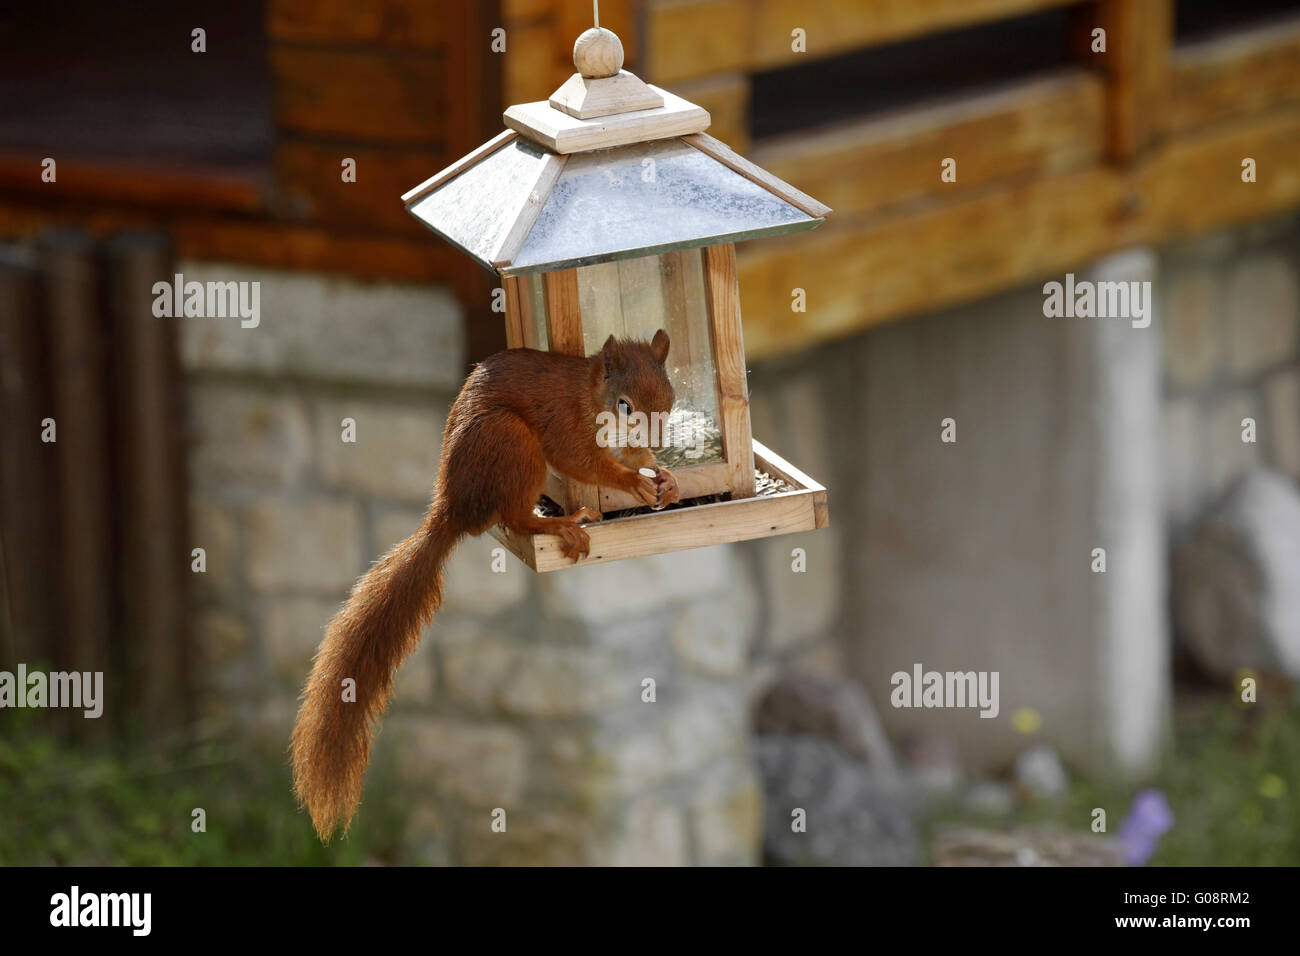 Red squirrel / Sciurus vulgaris on bird feeder Stock Photo